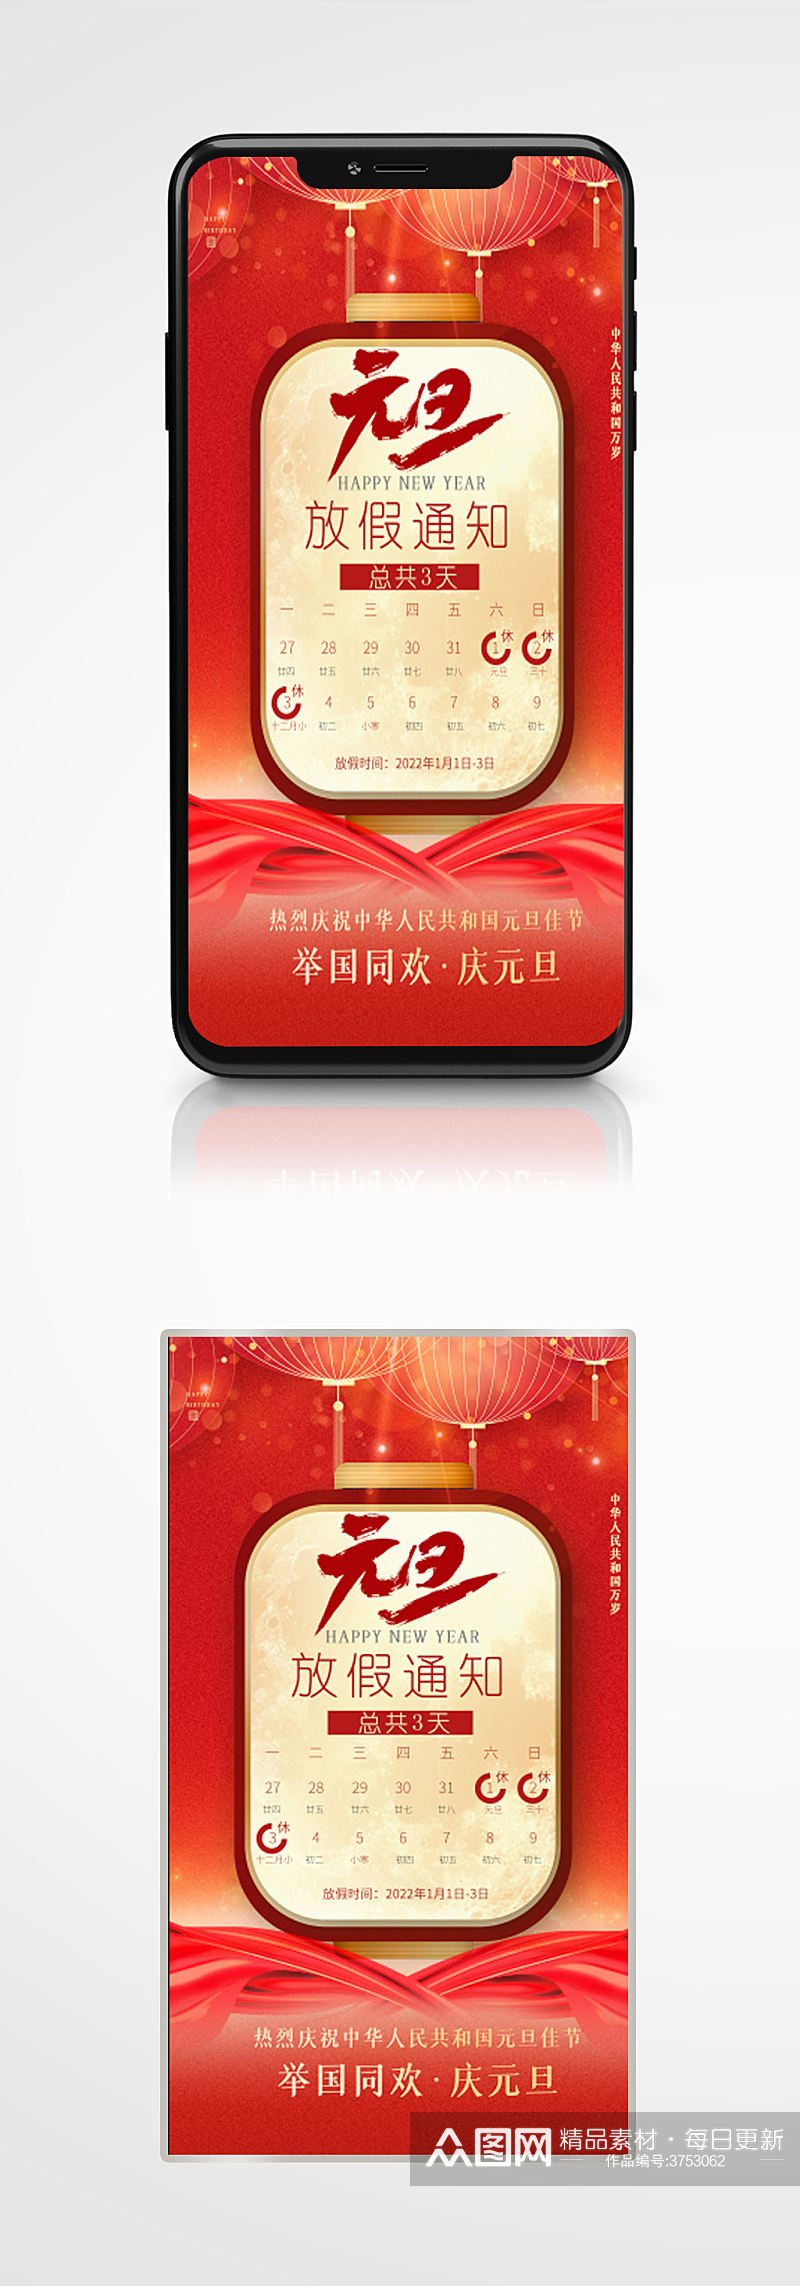 红金中国风新年元旦放假通知节日海报素材